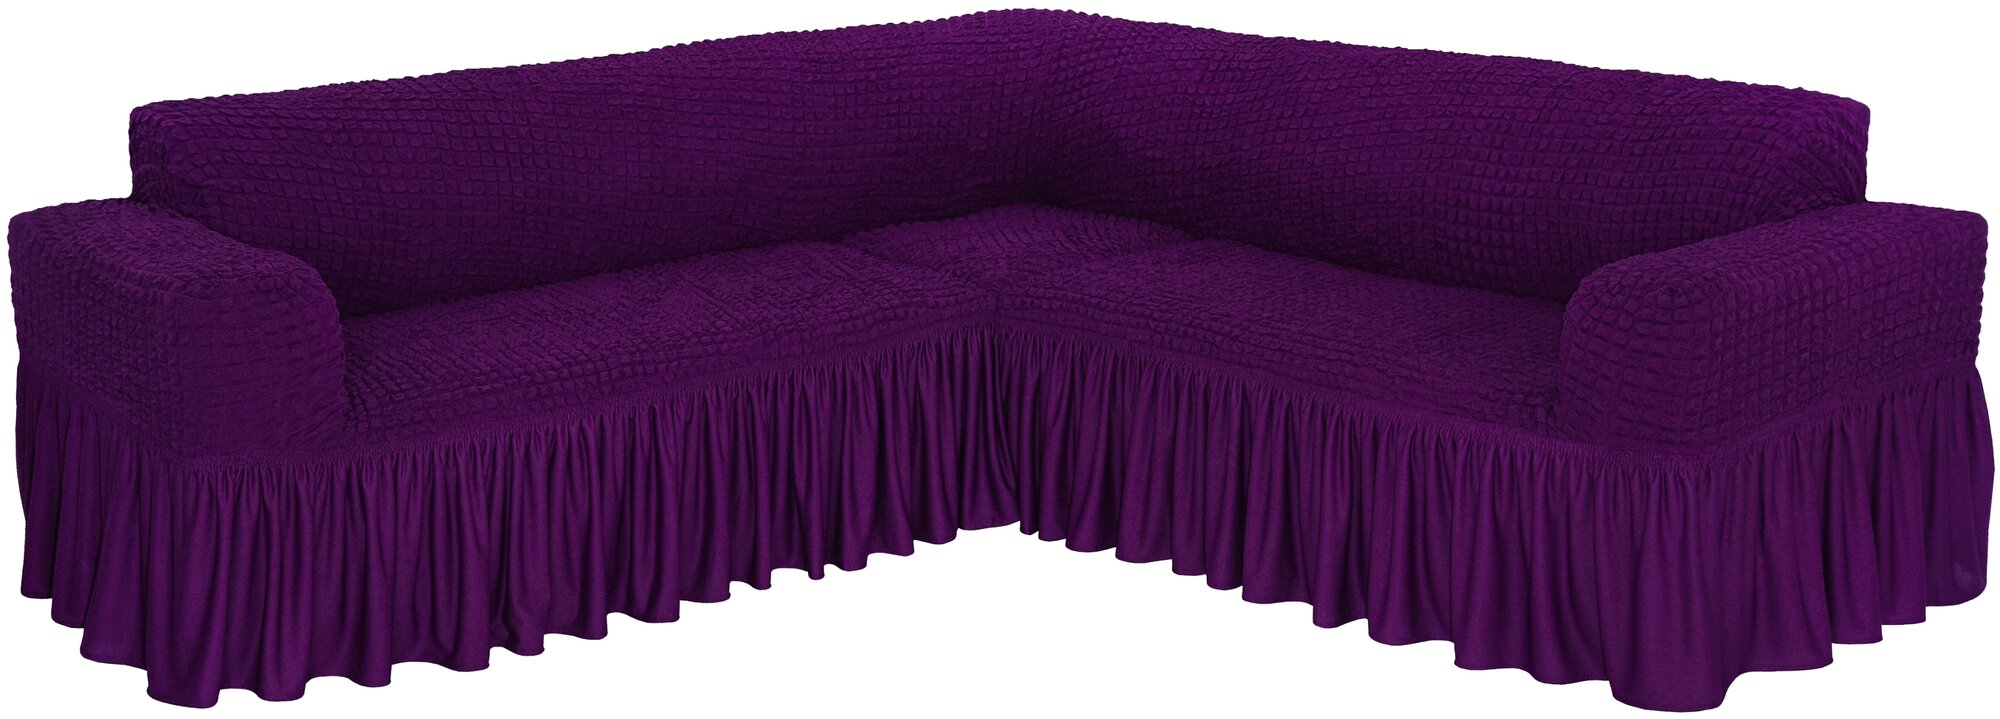 Чехол Venera на угловой диван, цвет Фиолетовый